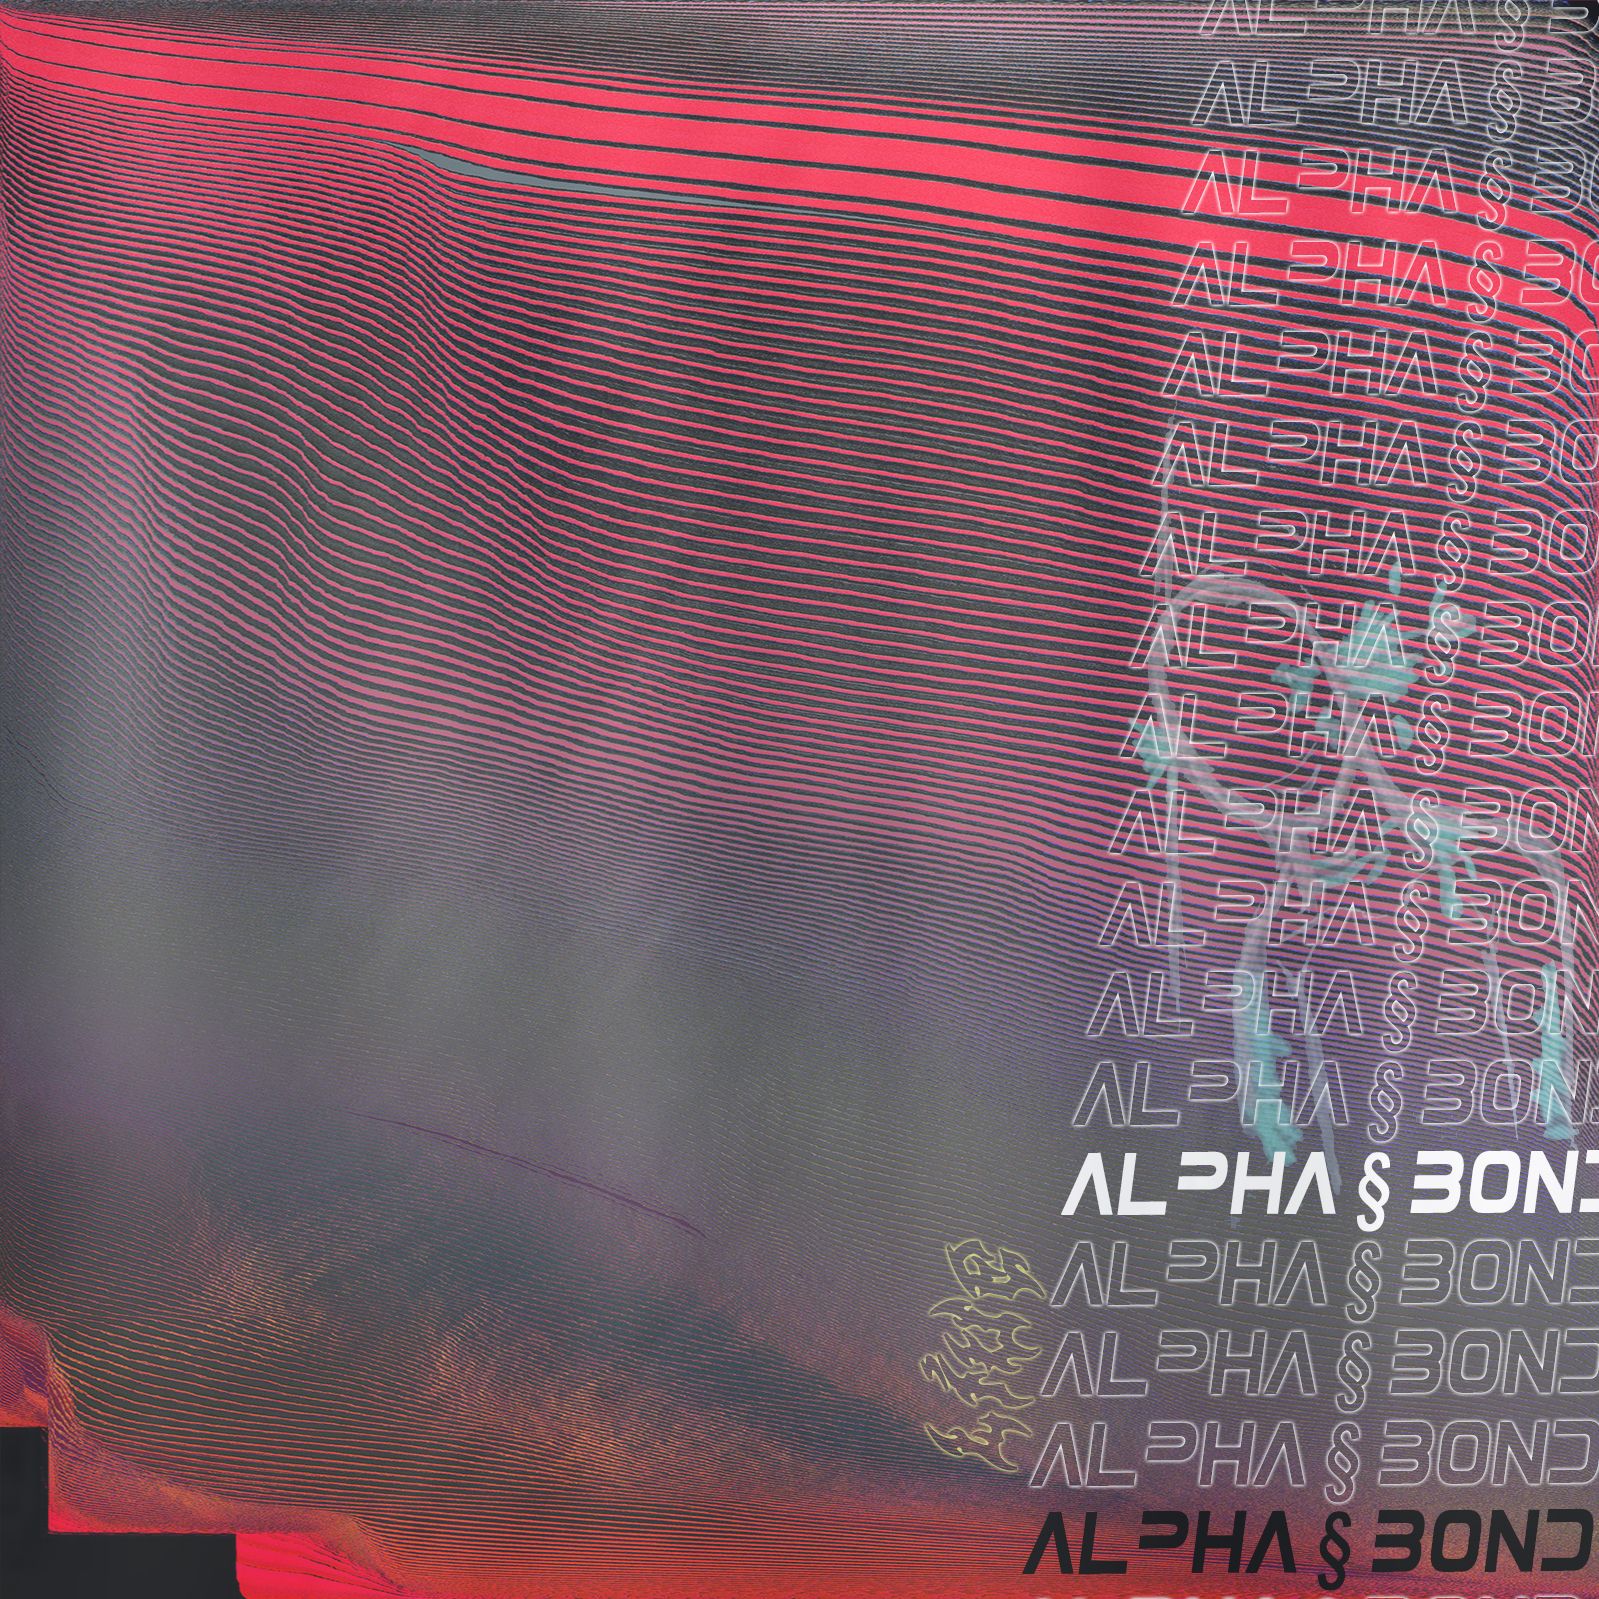 Parsisiųsti alpha § bond